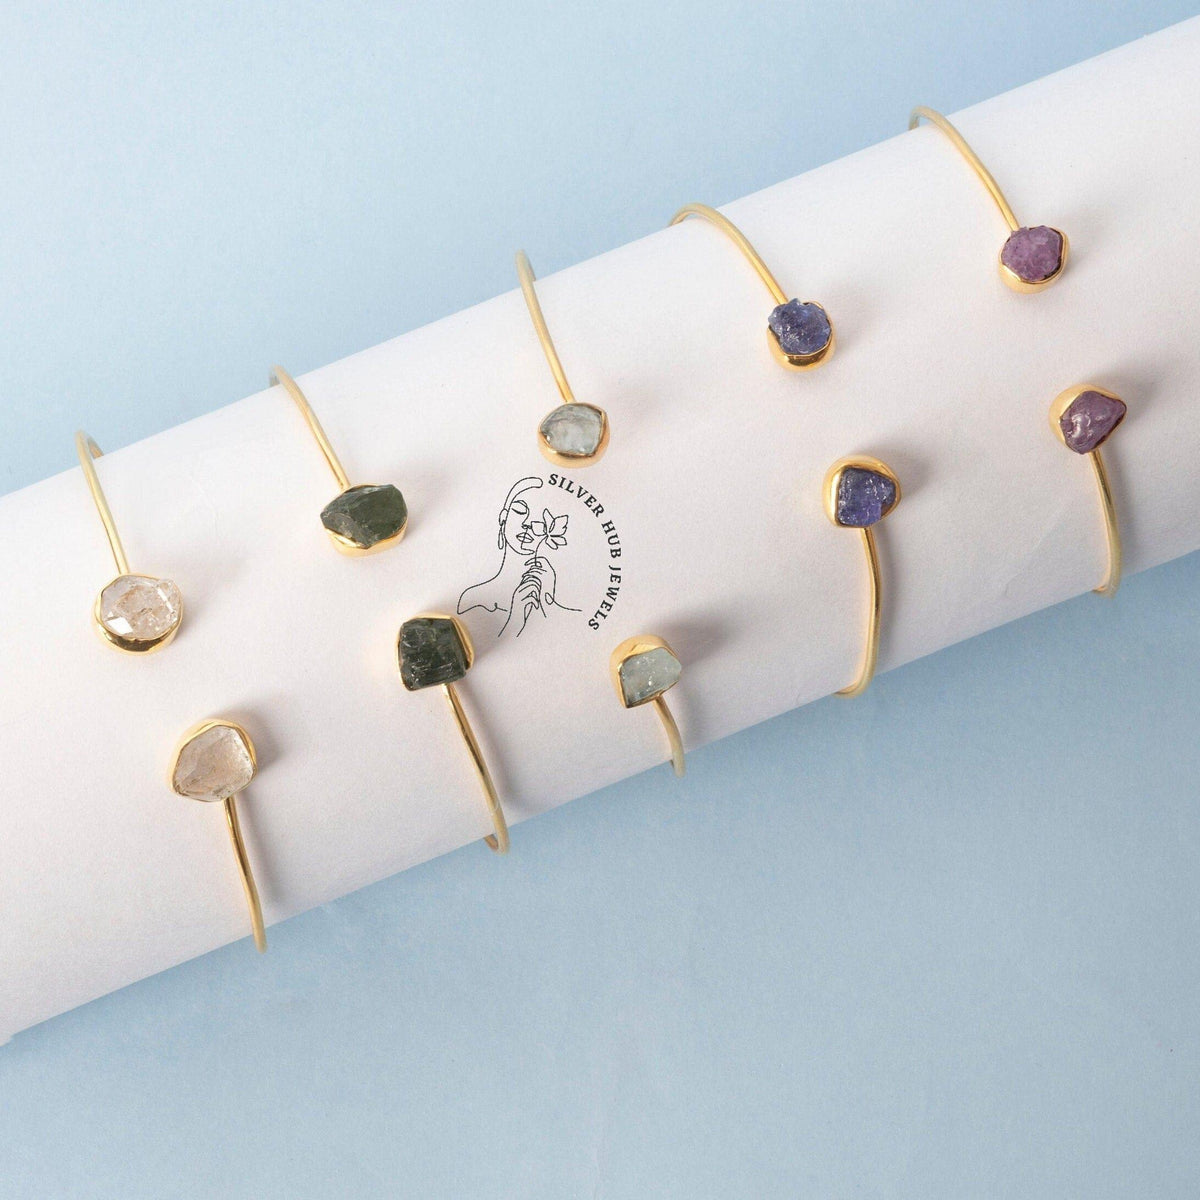 Gemstone Bracelet, Birthstone Bracelet, Raw Gemstone Jewelry, Gold Bracelet , Dainty Chain Bracelet, Raw Stone Jewelry